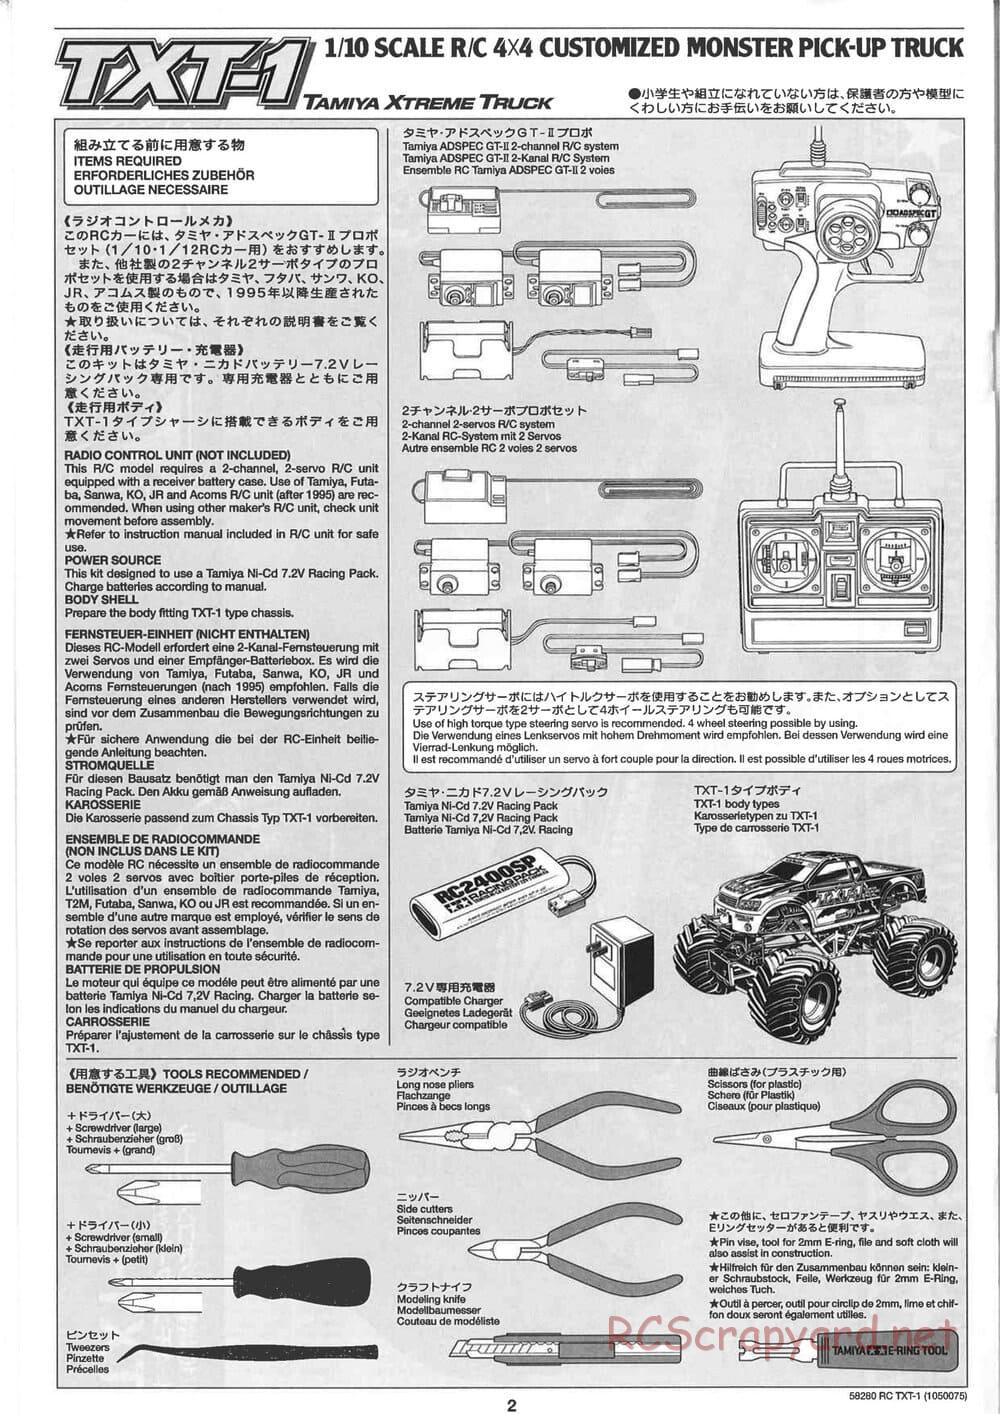 Tamiya - TXT-1 (Tamiya Xtreme Truck) Chassis - Manual - Page 2